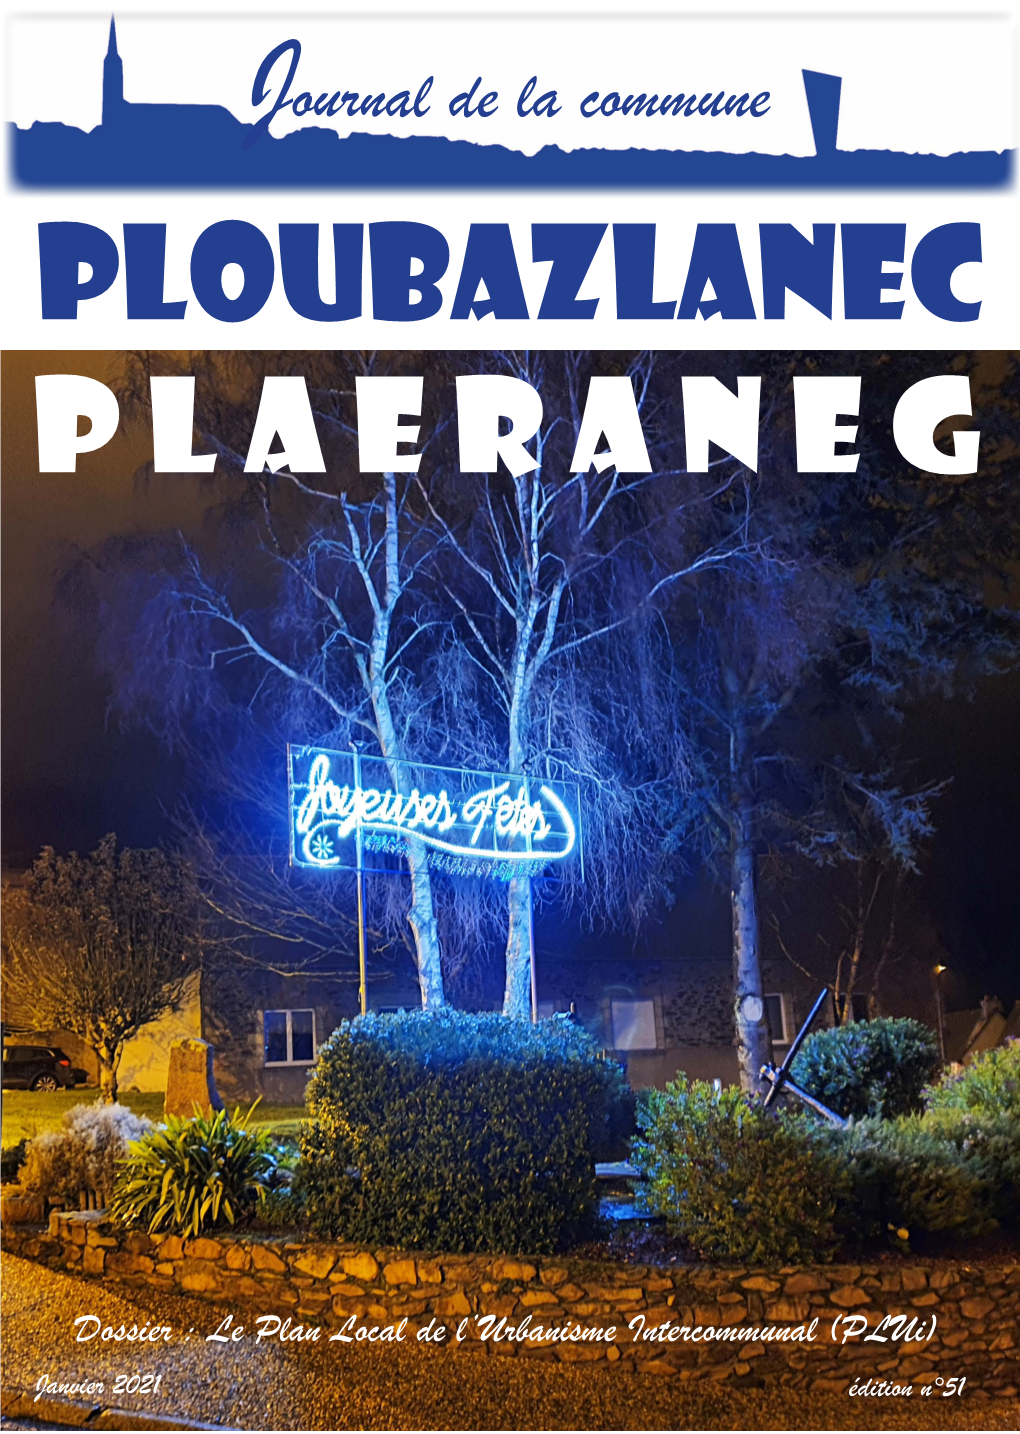 Journal De La Commune Ploubazlanec P L a E R a N E G Le Nouveau Conseil Municipal